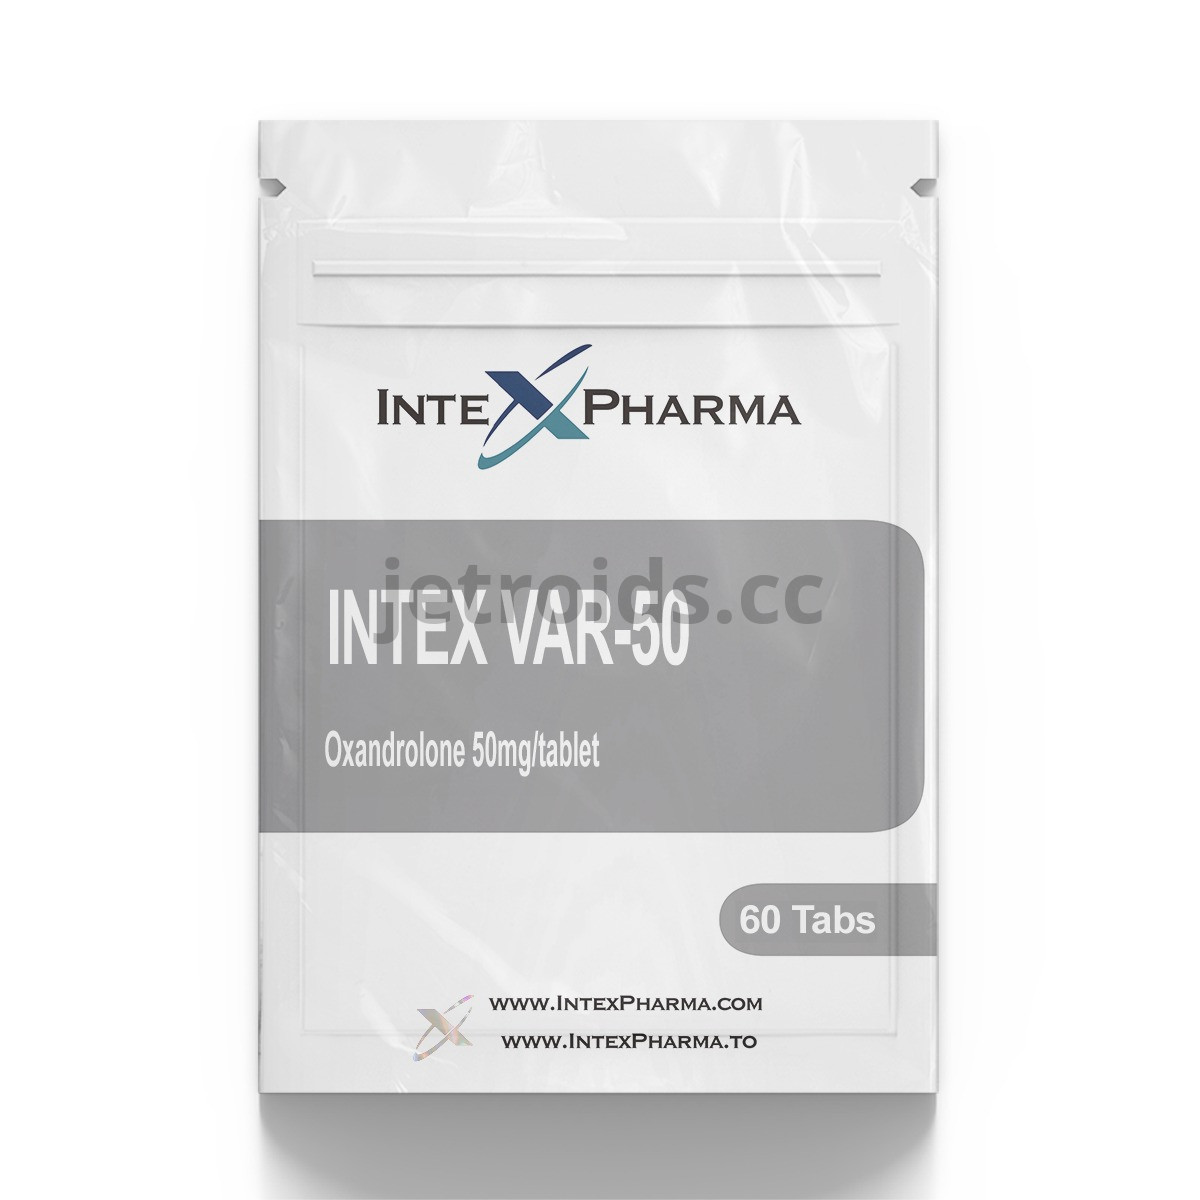 IntexPharma Intex VAR-50 Product Info